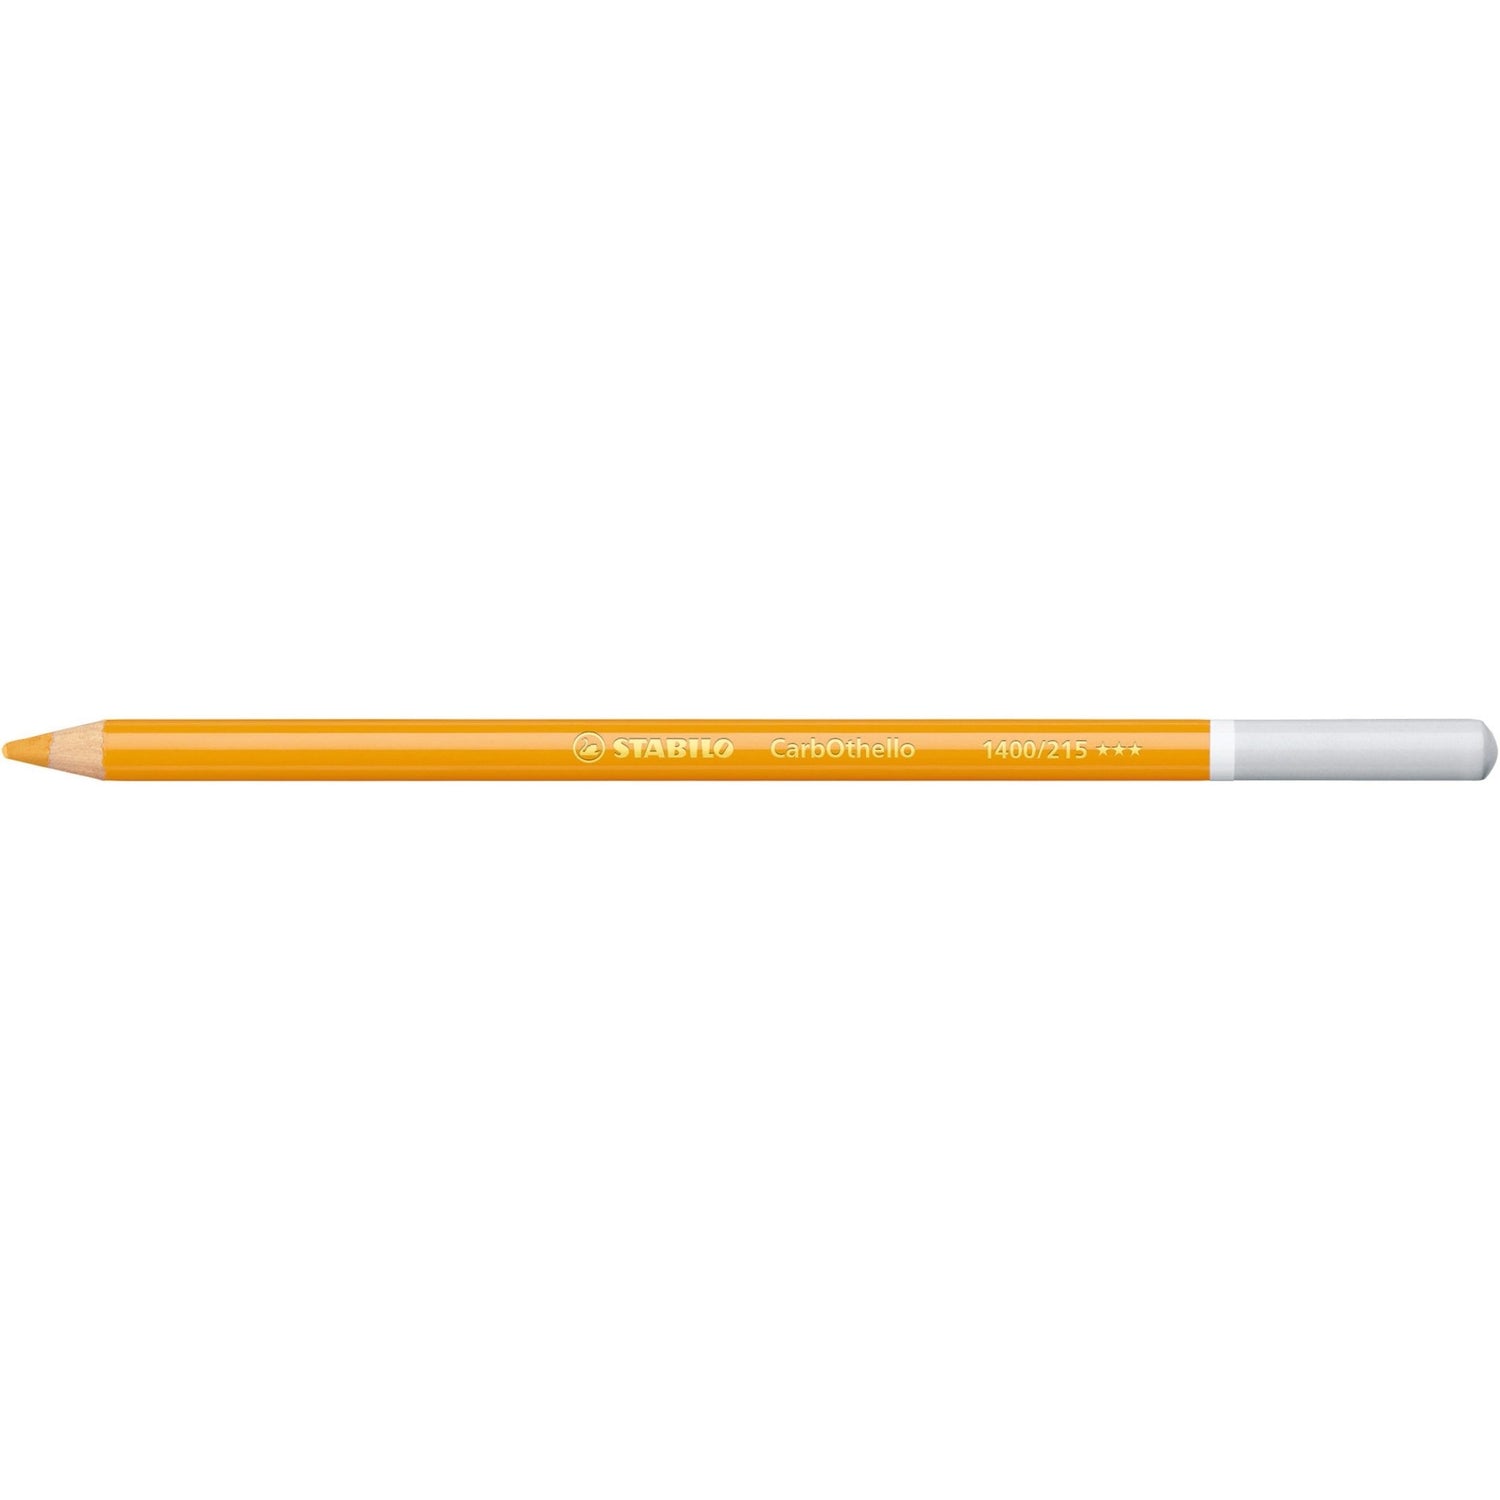 Stabilo CarbOthello Coloured Pastel Pencil 215 Indian Yellow - theartshop.com.au